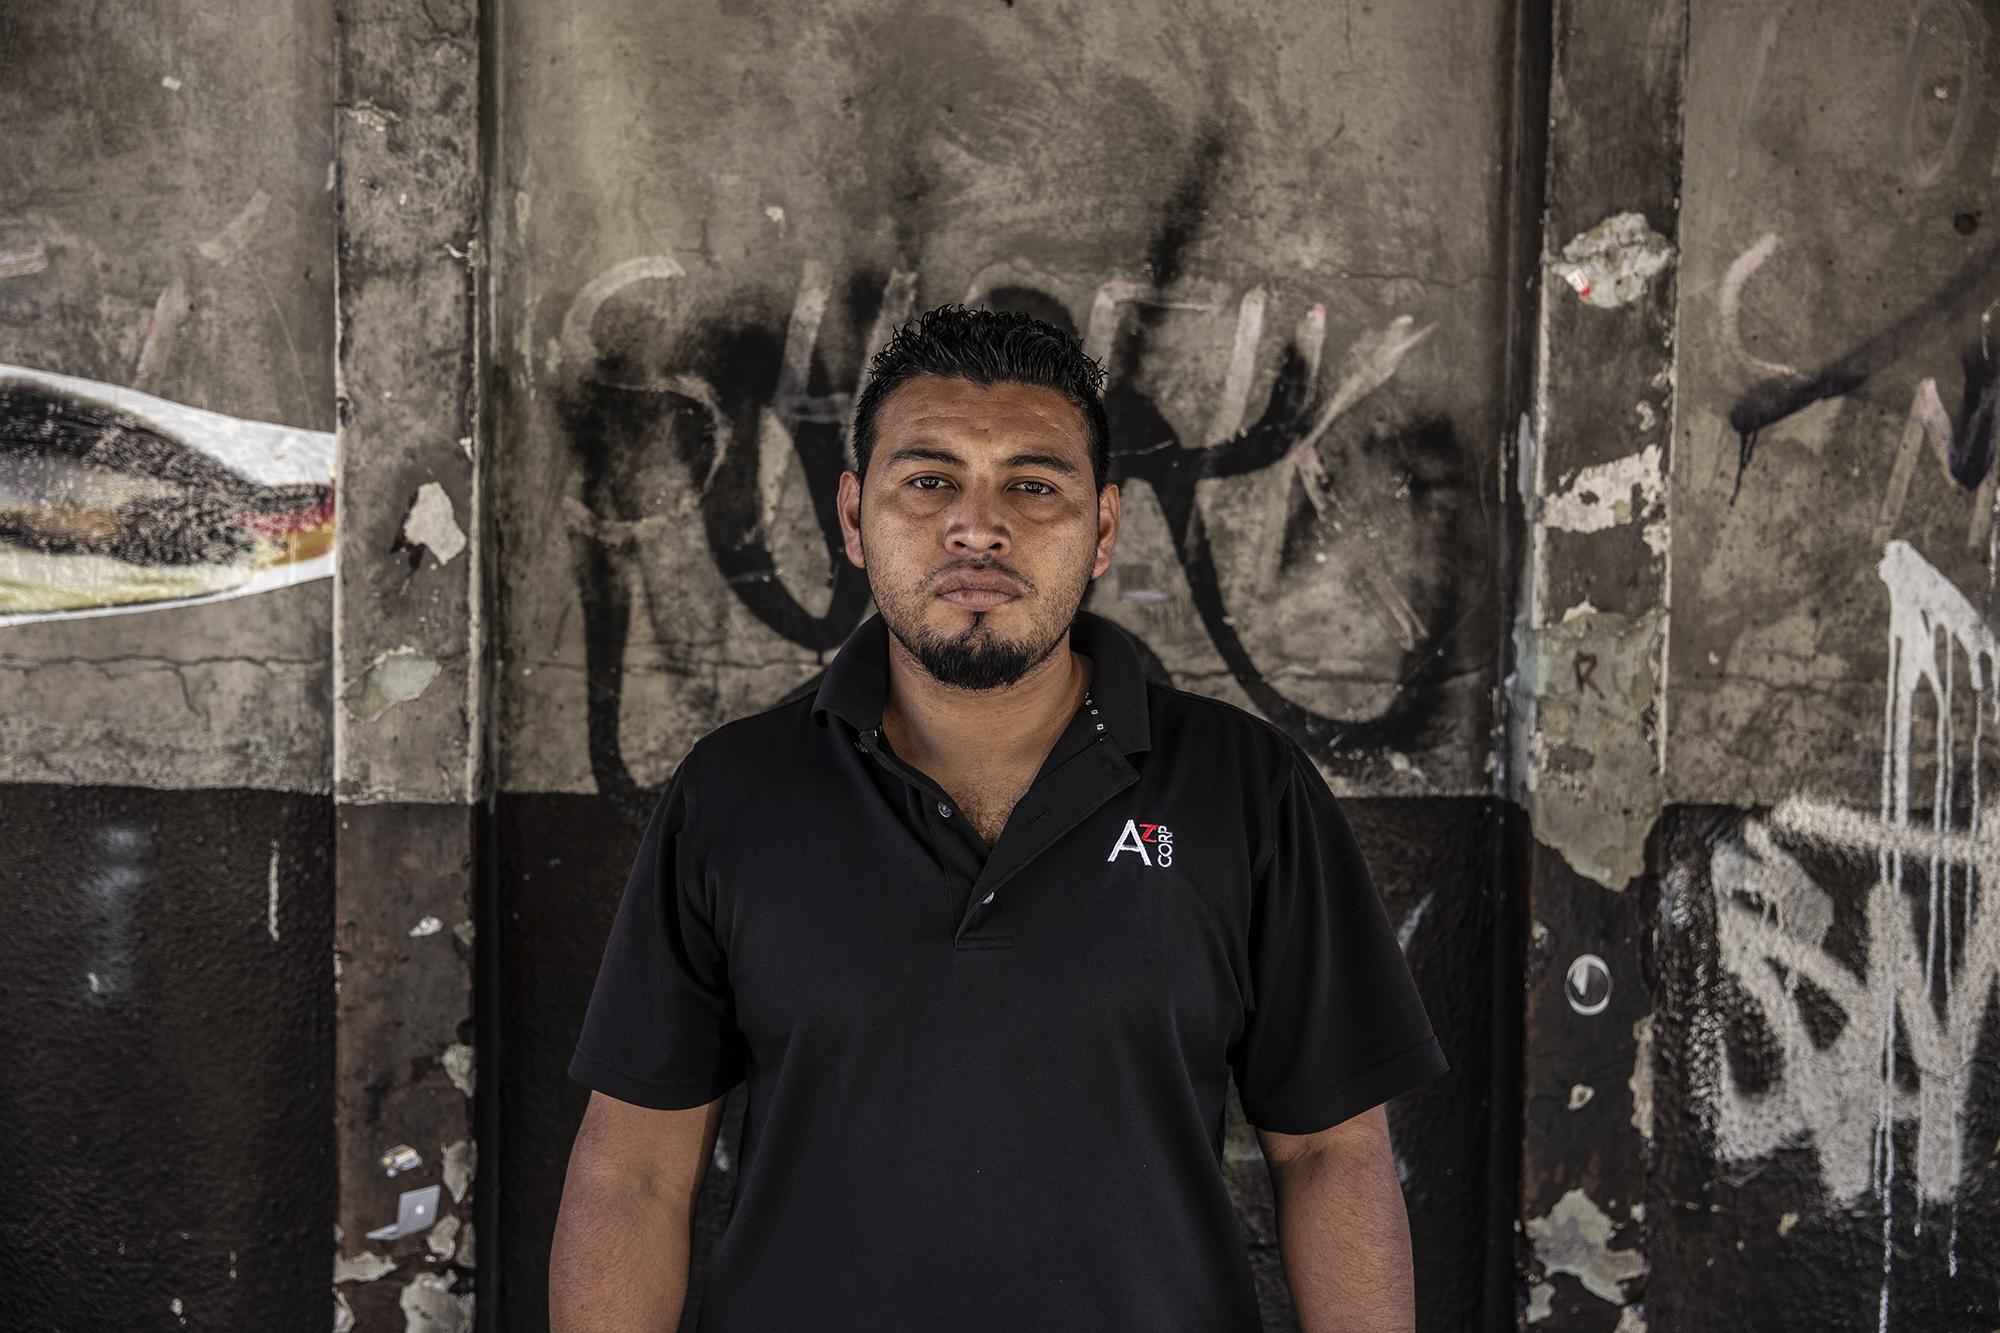 Ernesto Paz, de 29 años, es técnico electricista. Trabajó por unos años, pero lo despidieron. Ahora se dedica a vender piezas de relojes viejos y teléfonos celulares descompuestos.